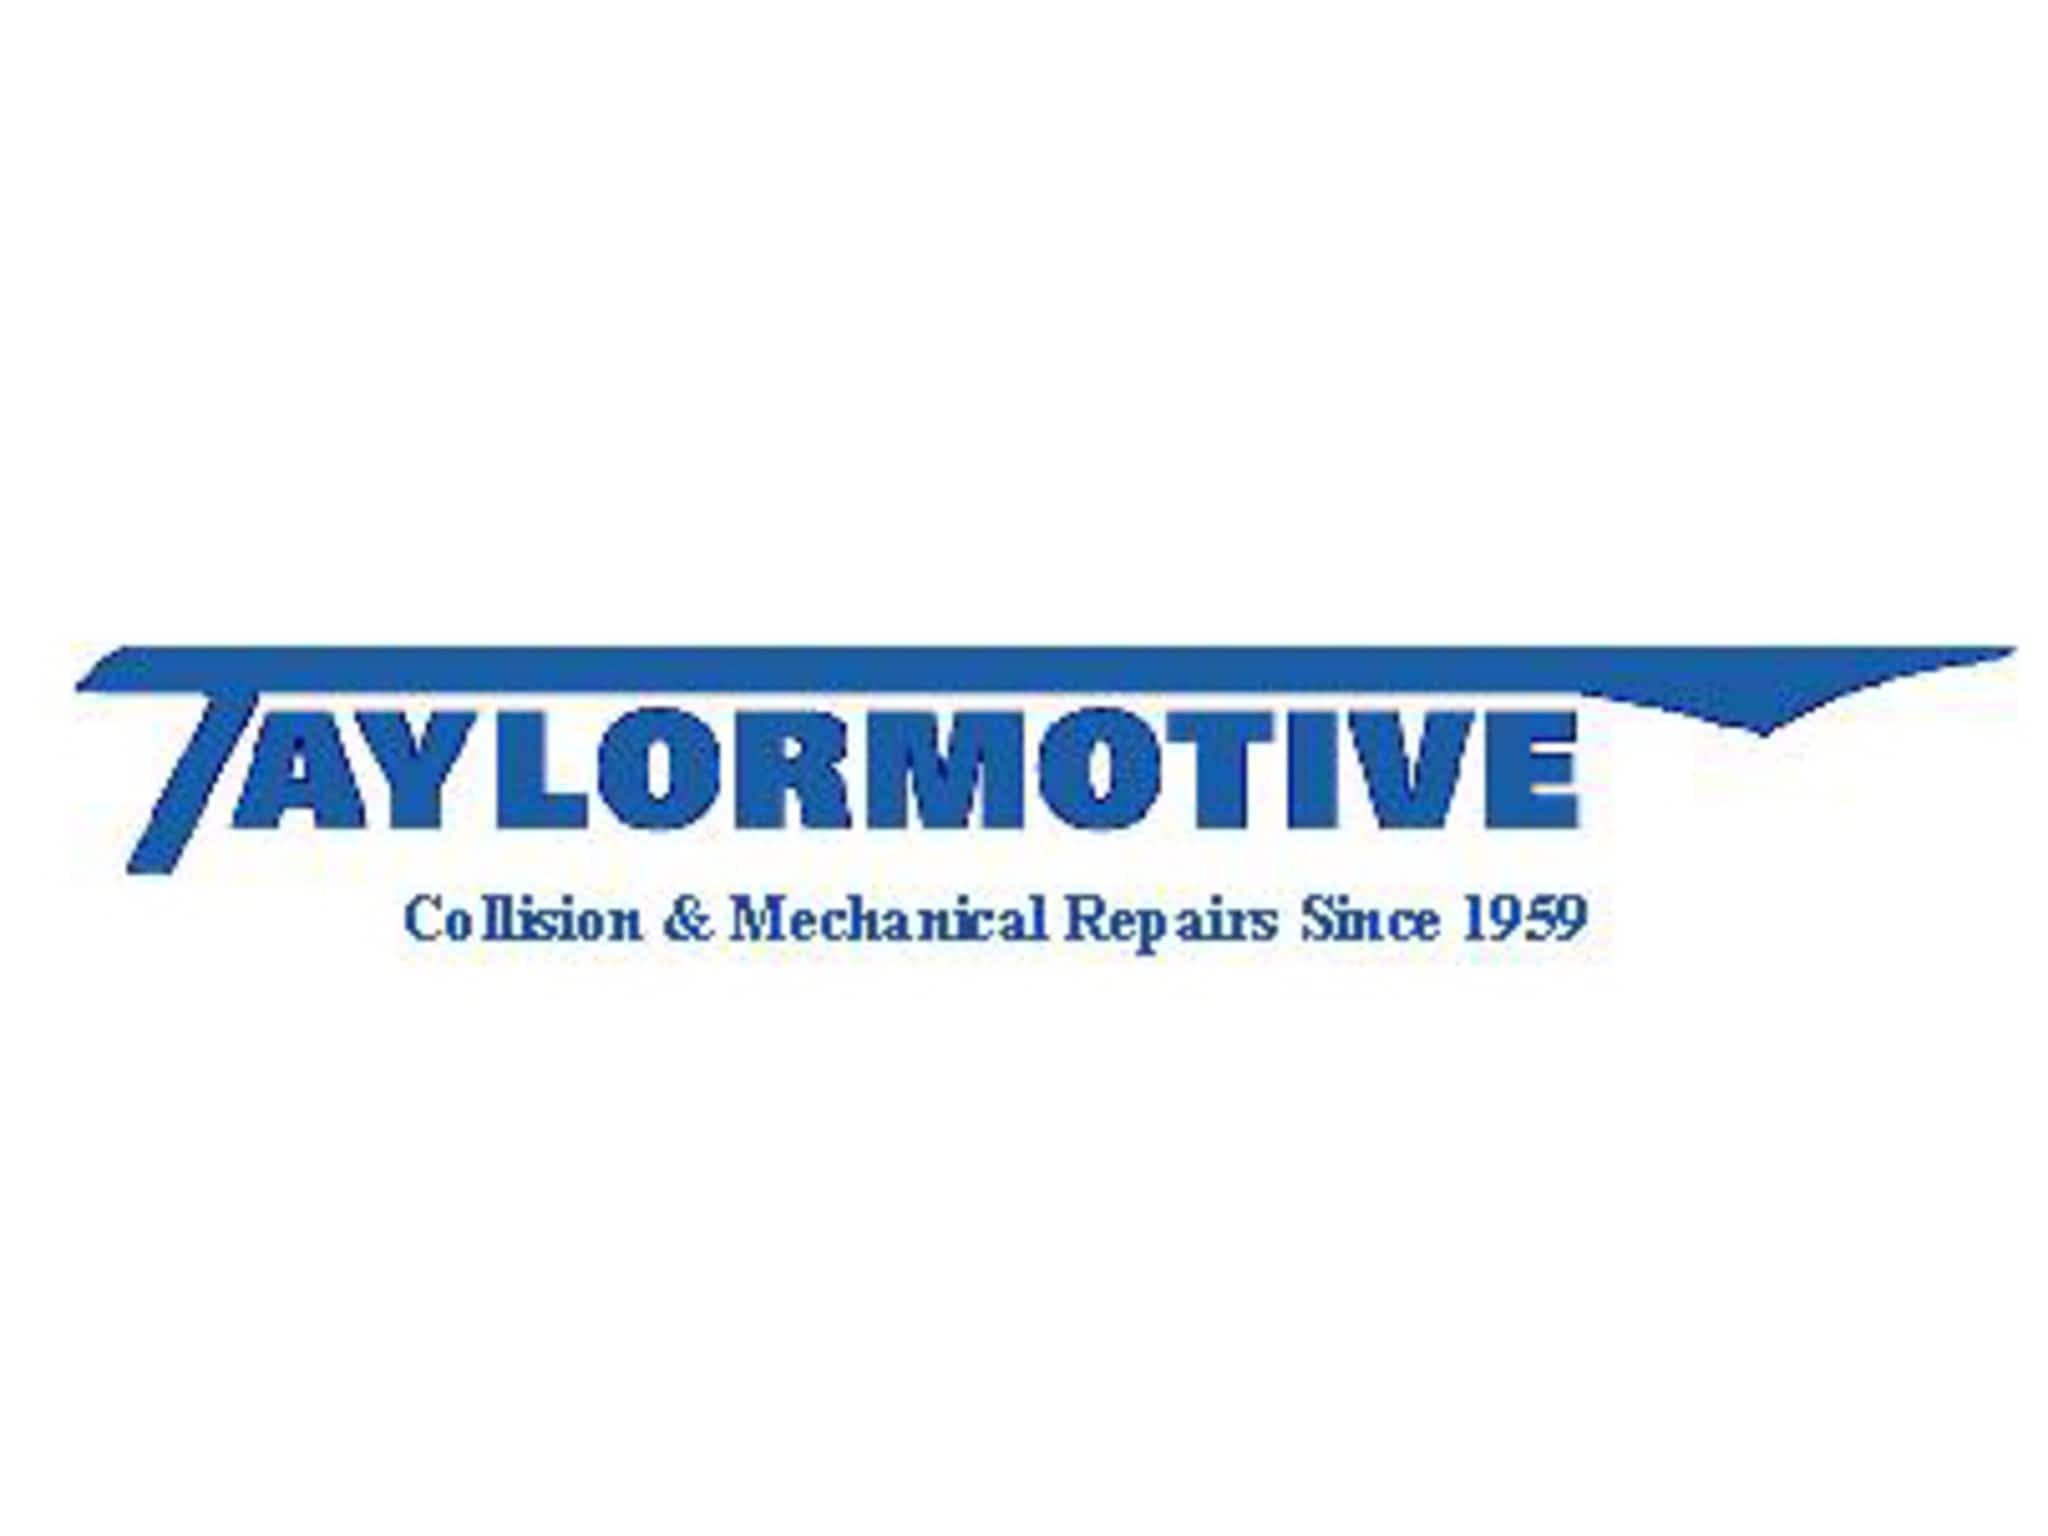 photo Taylormotive Service Ltd